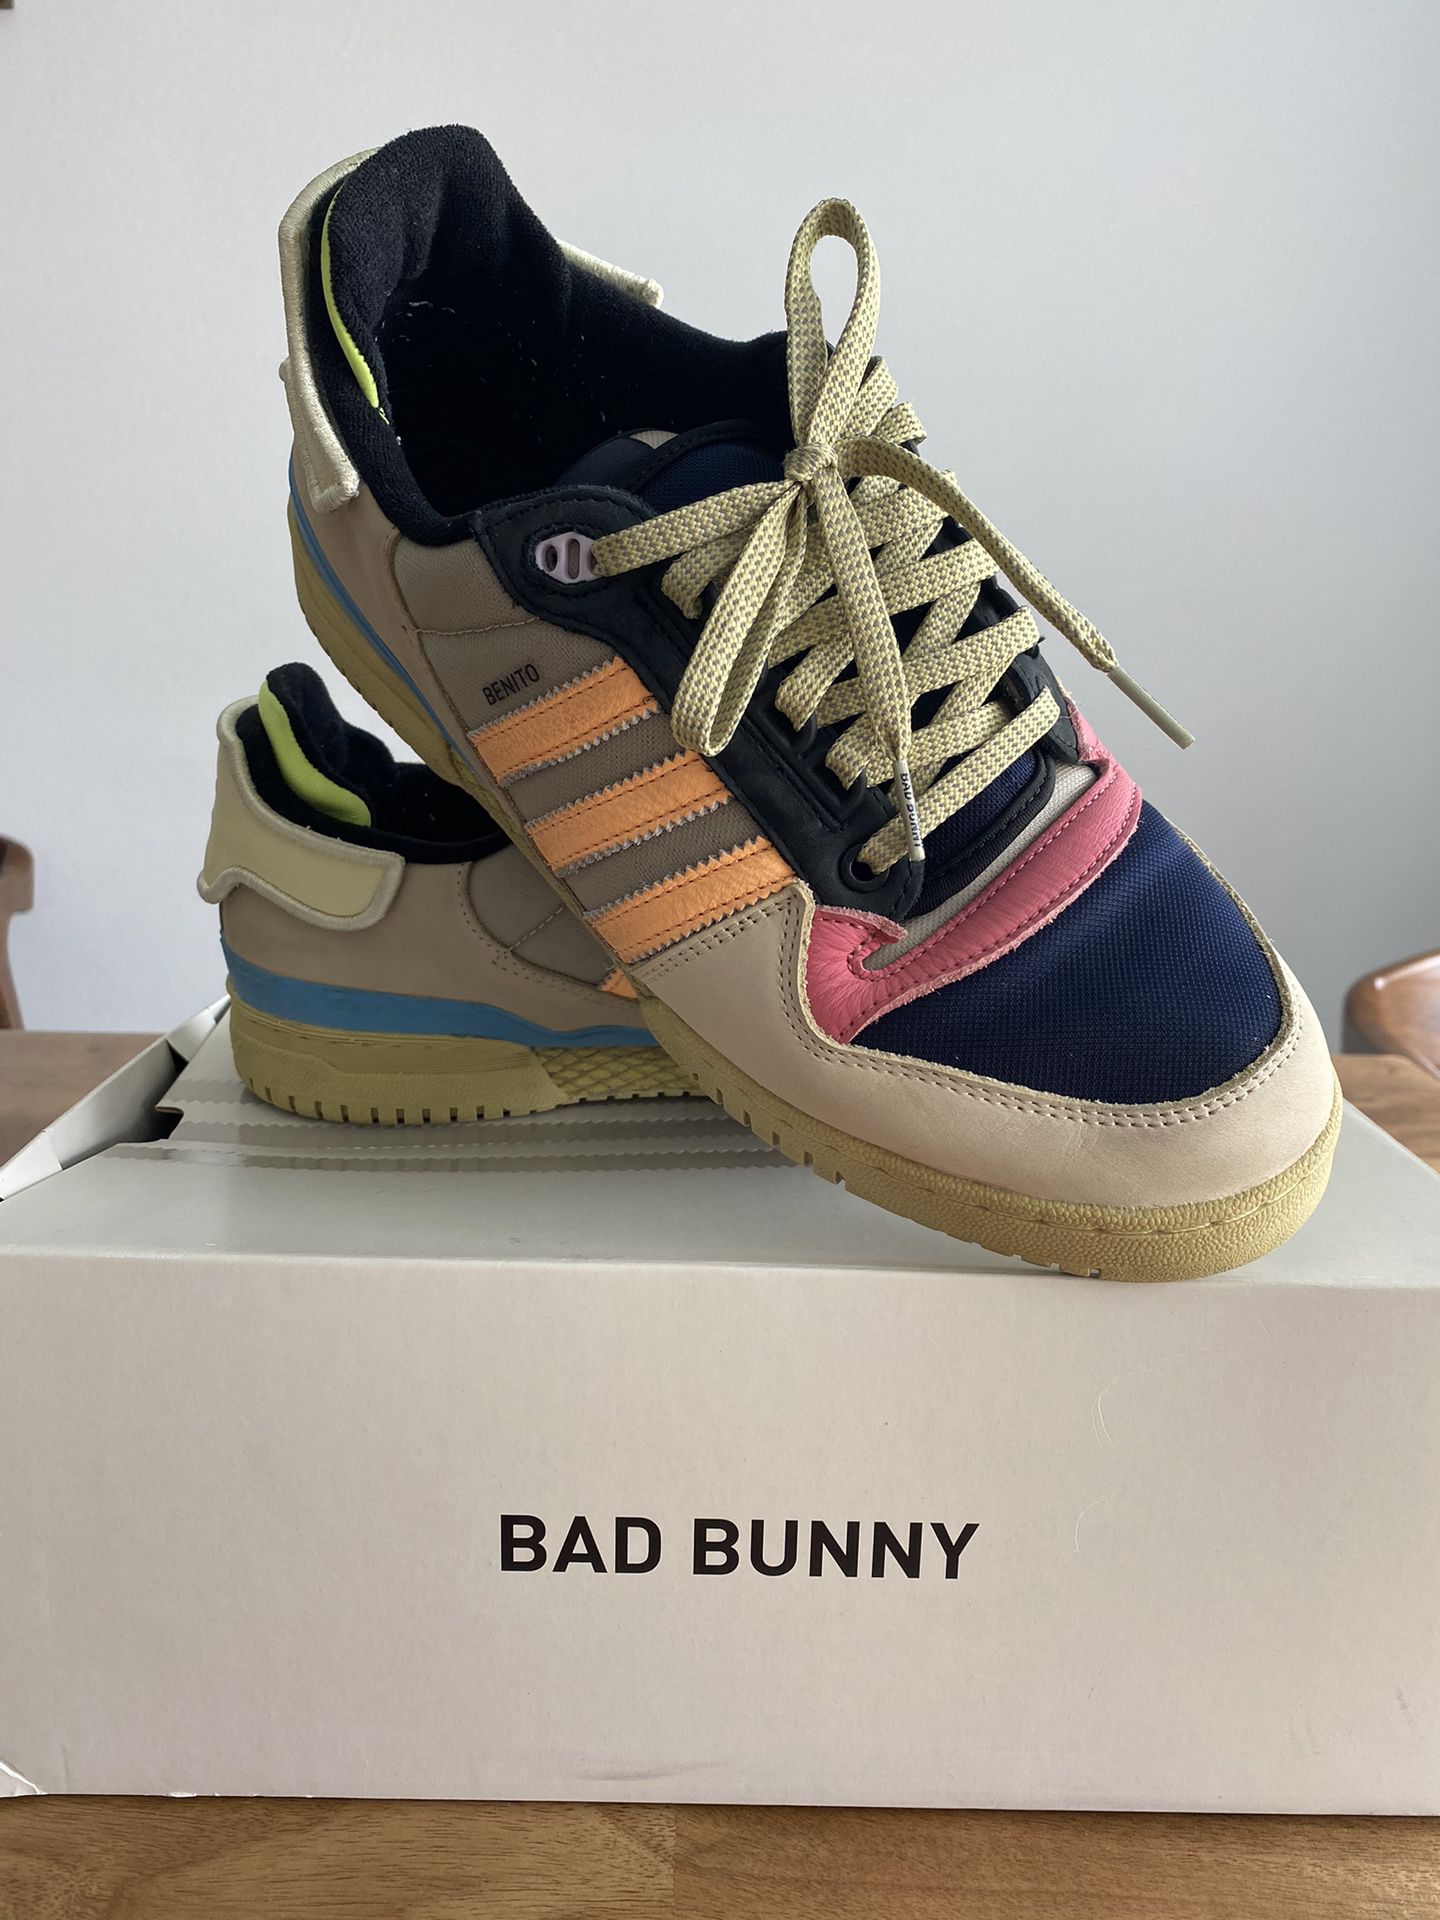 bad bunny adidas forum pwr size11